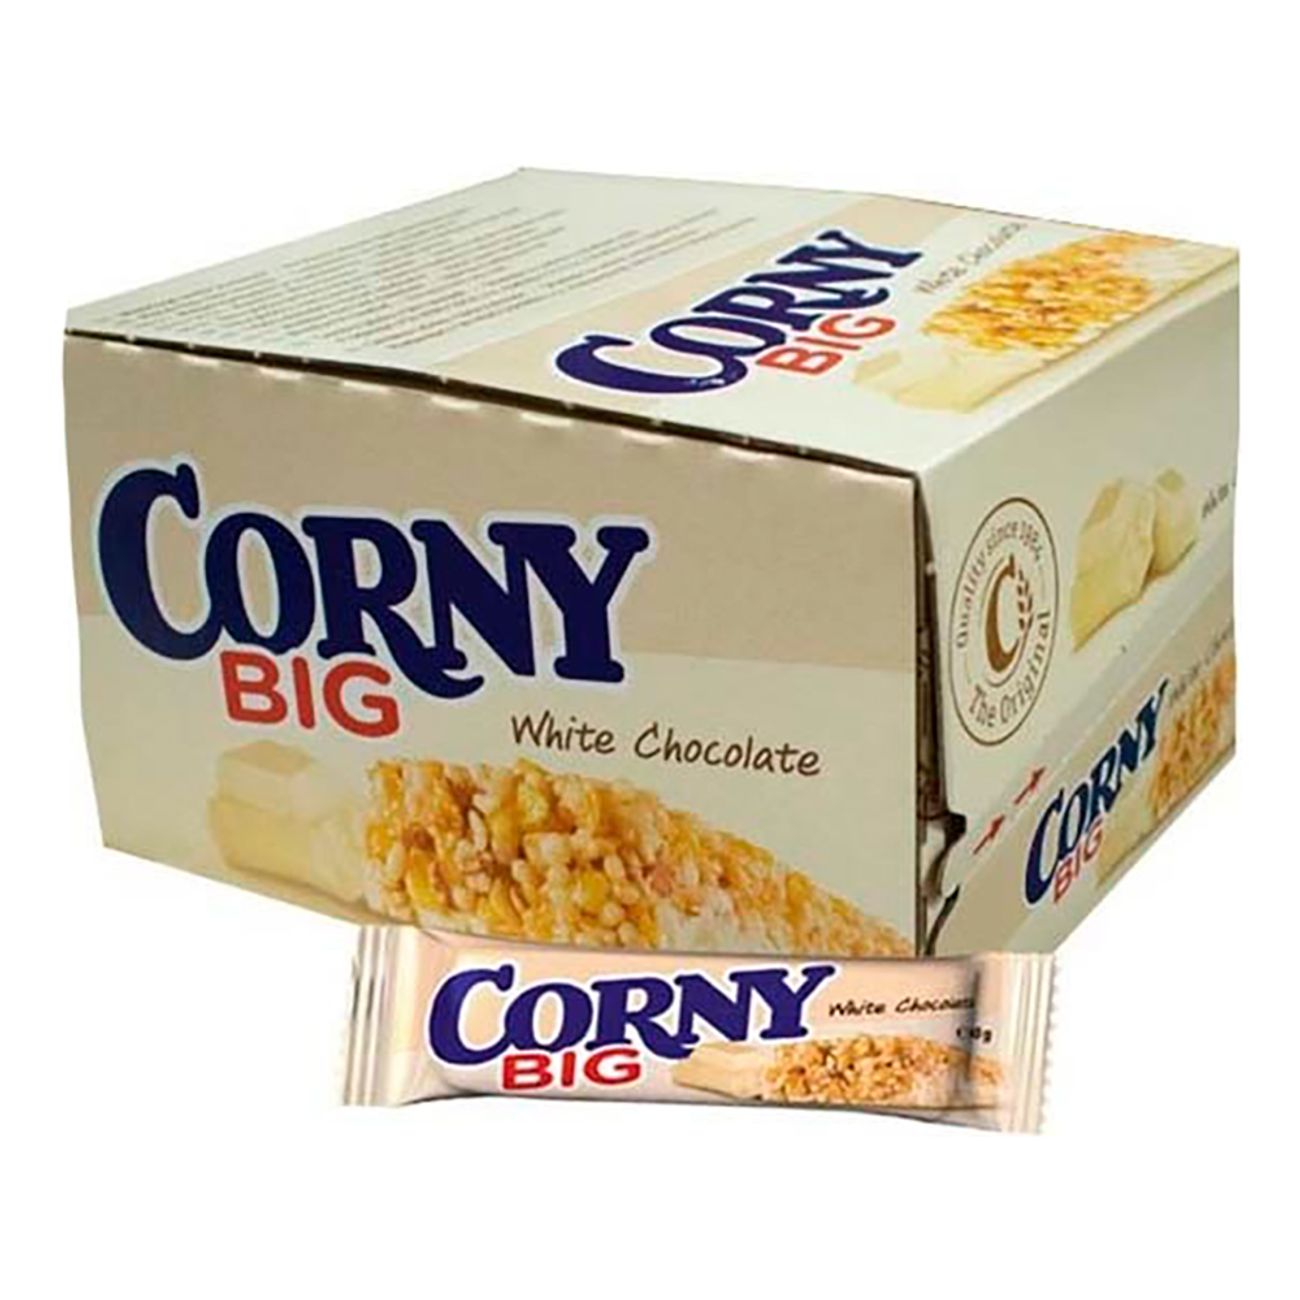 corny-big-white-chocolate-75635-3